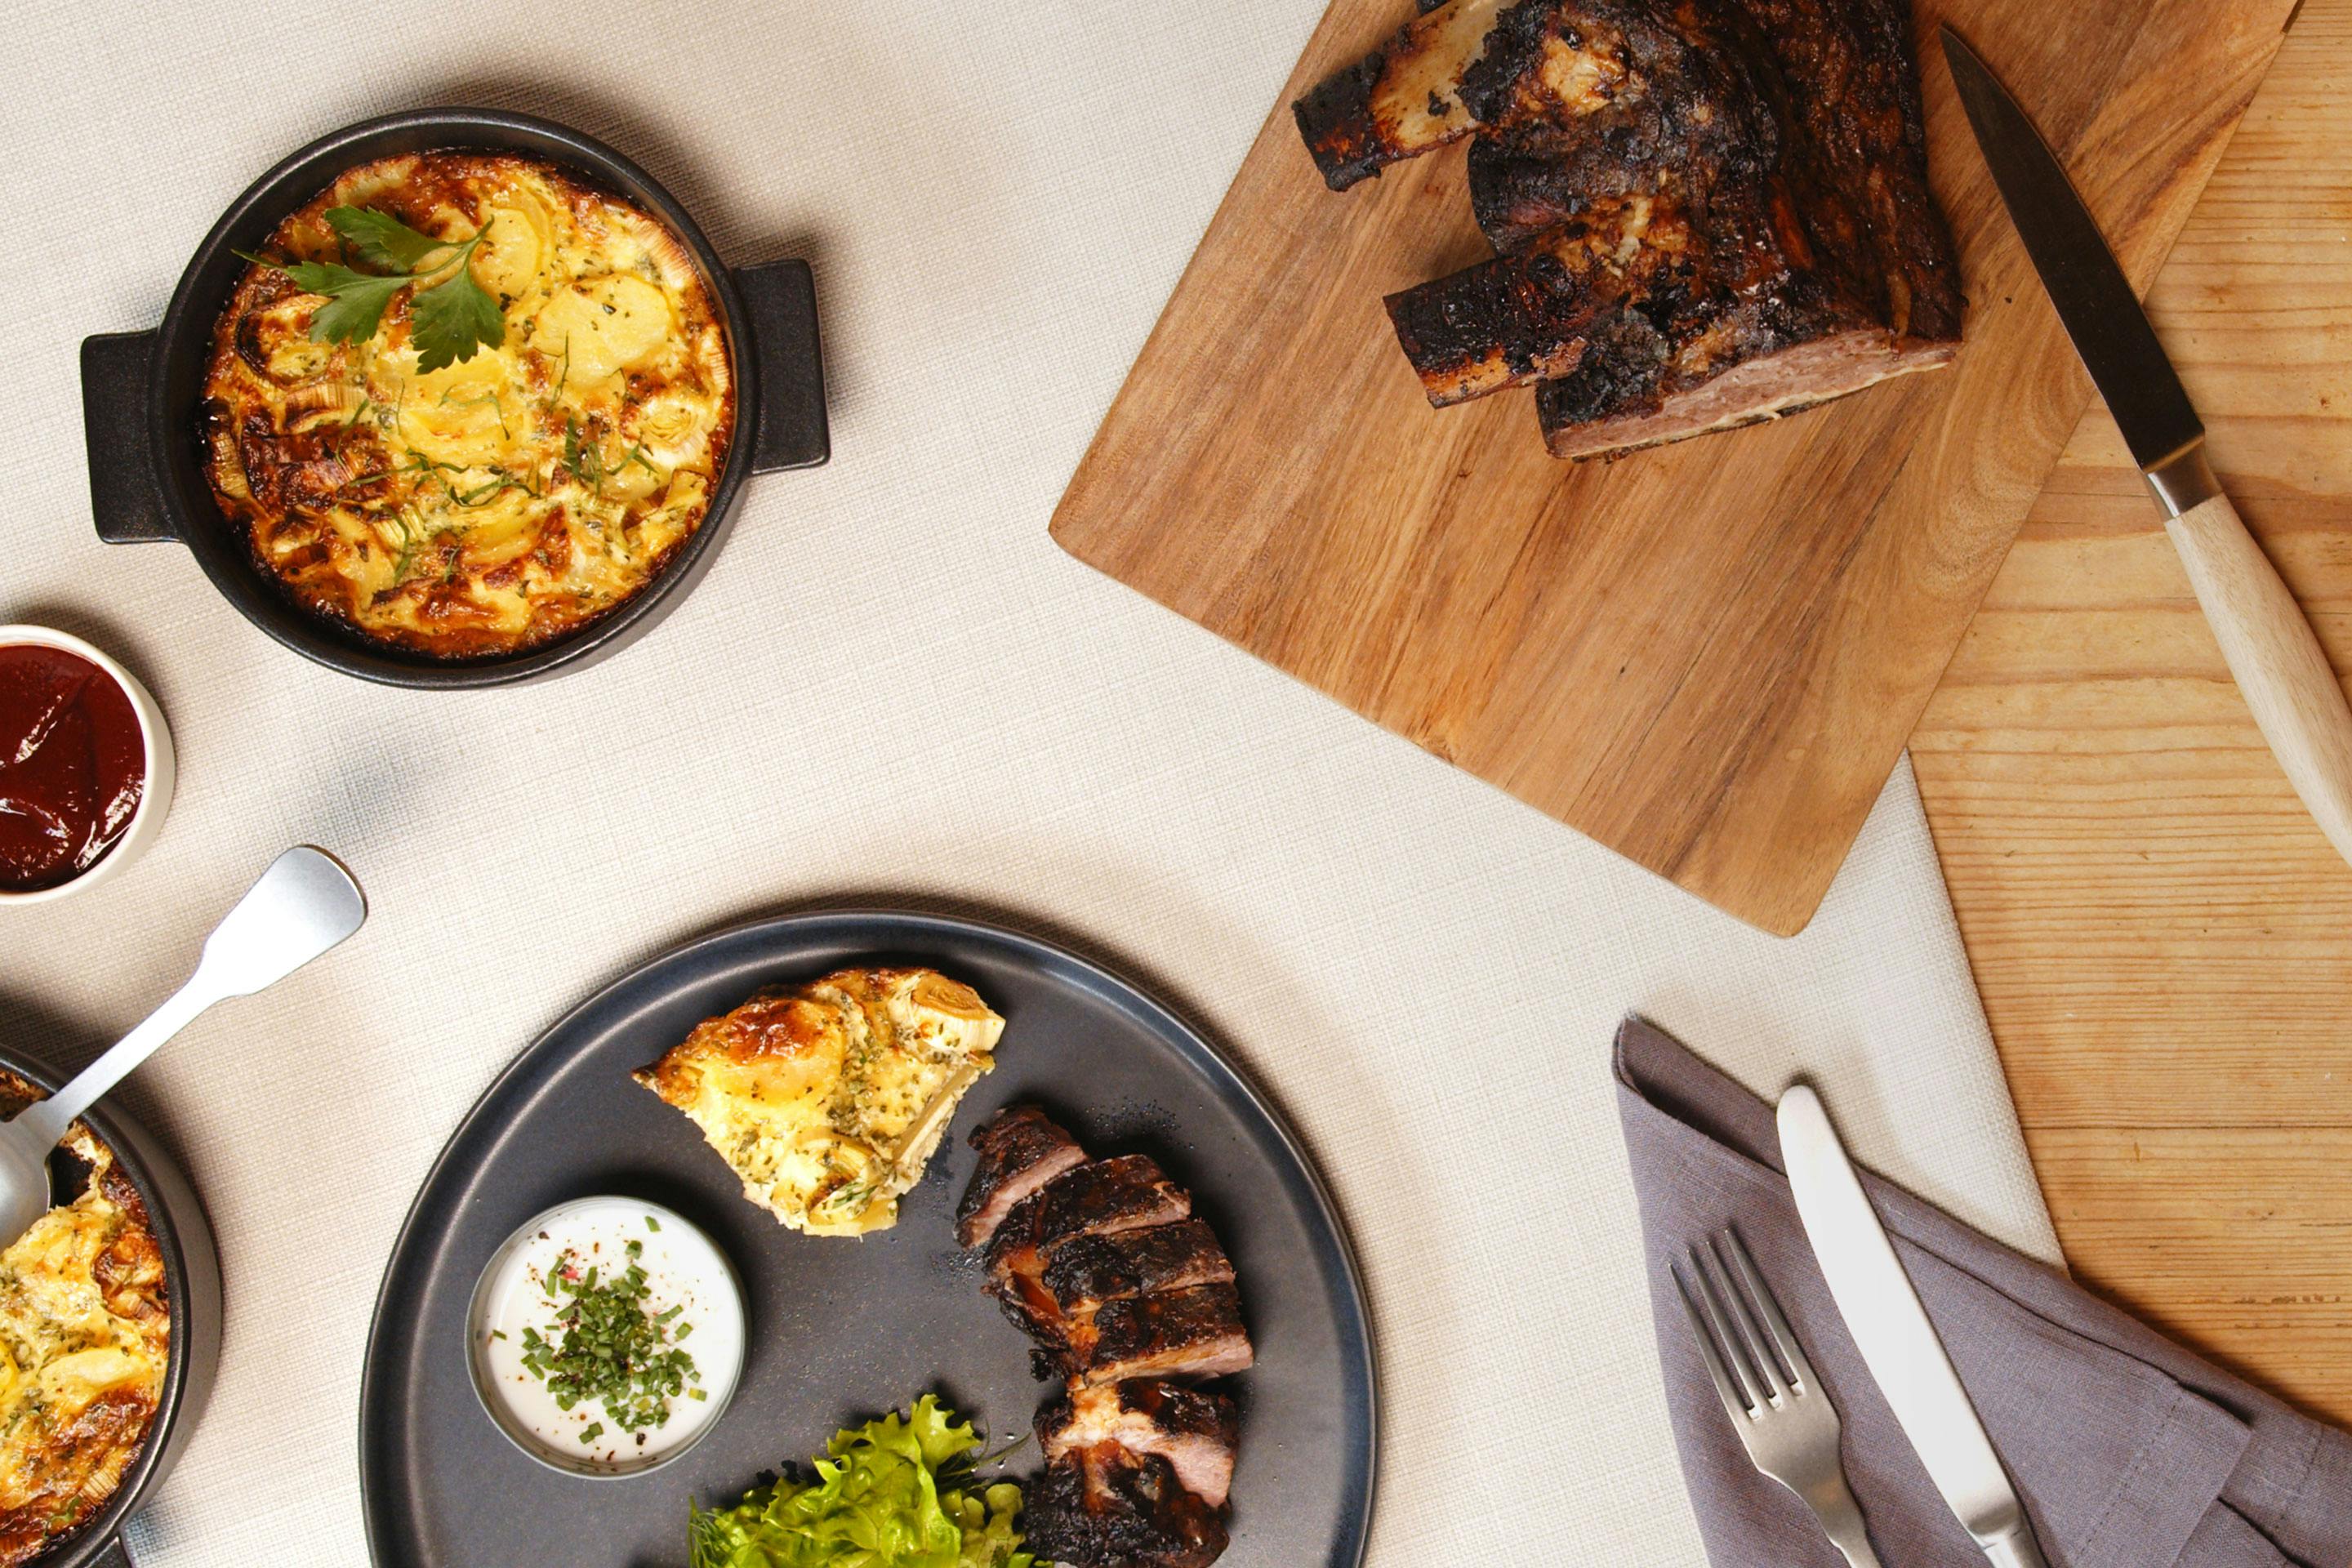 ein dunkler Teller mit aufgeschnittenen Beef Ribs und etwas Kartoffelgratin sowie Salatbeilage auf einer hellgrauen Tischdecke